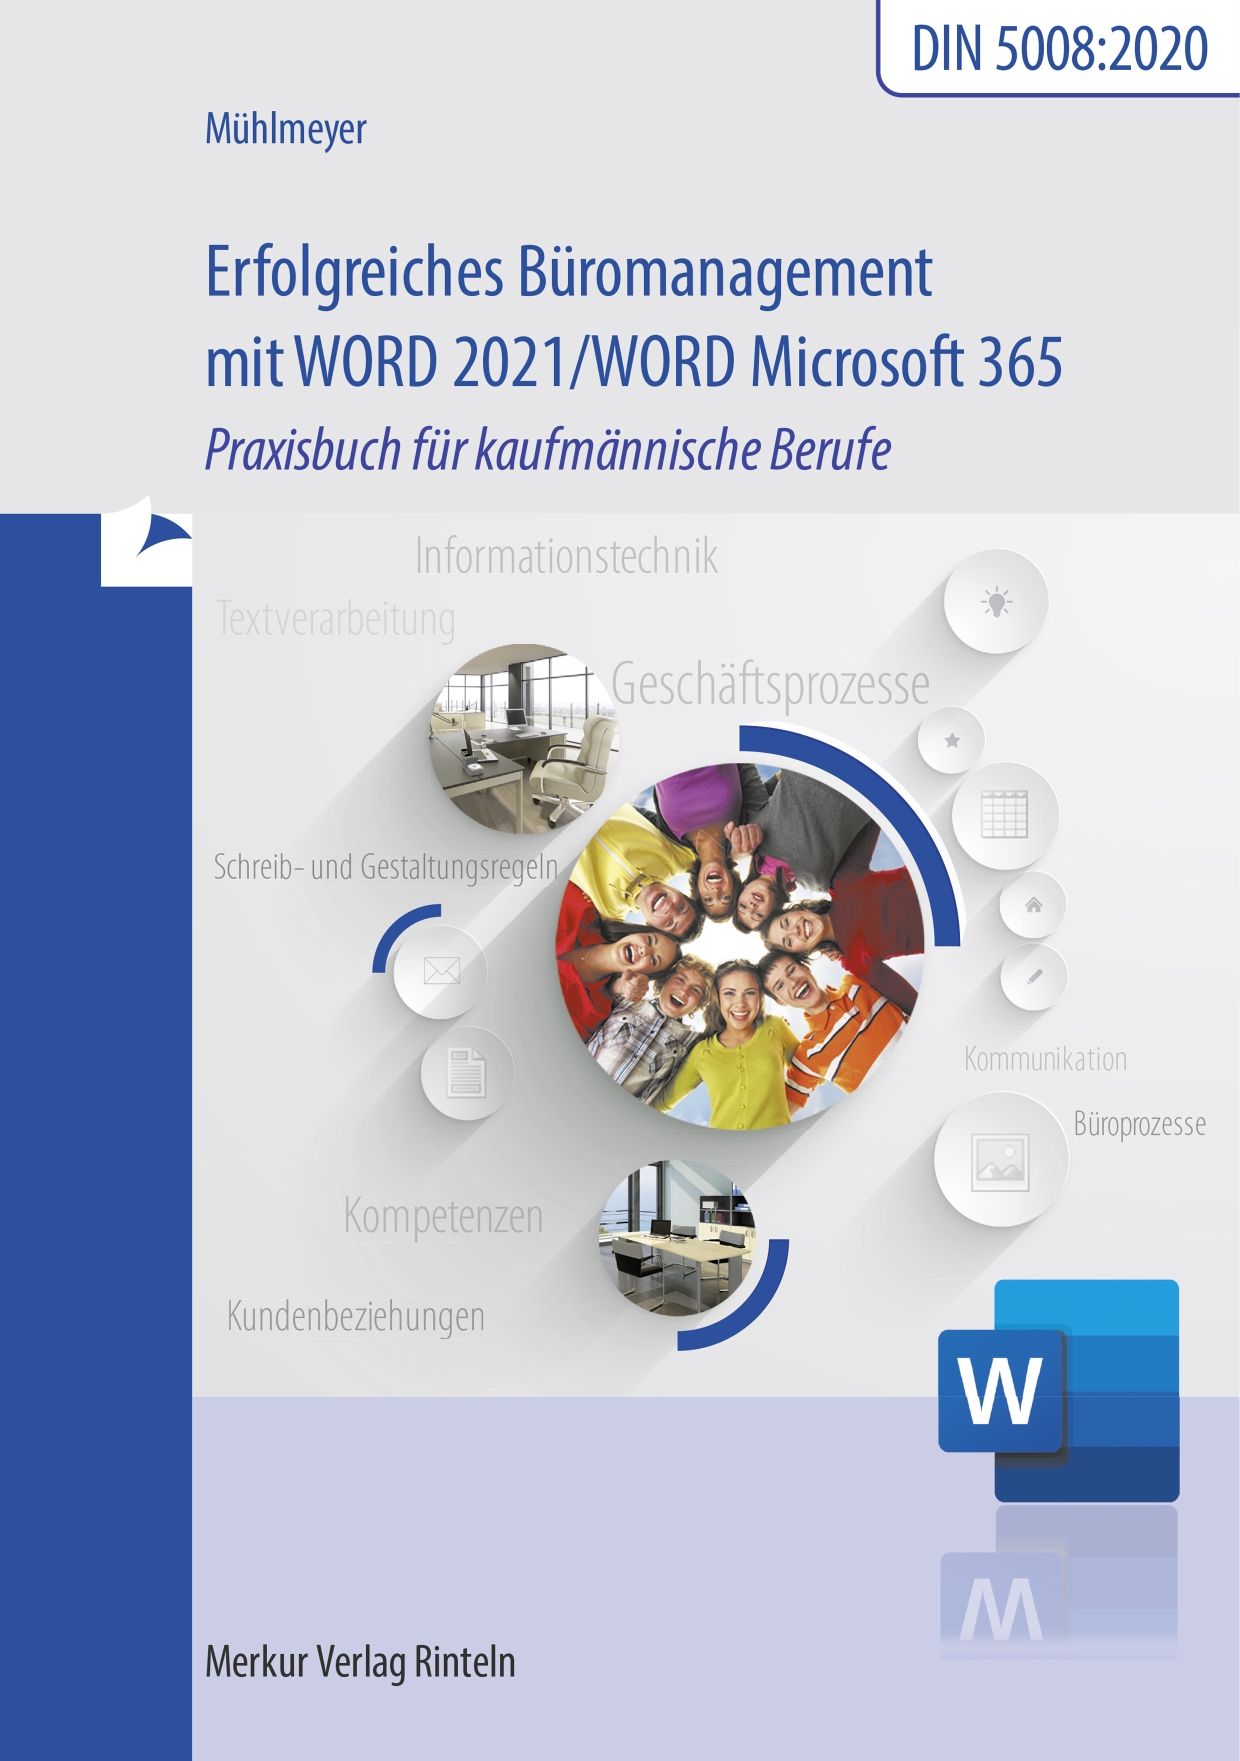 Erfolgreiches Büromanagement mit Word 2021 / Word Microsoft 365 Praxisbuch für kaufmännische Berufe